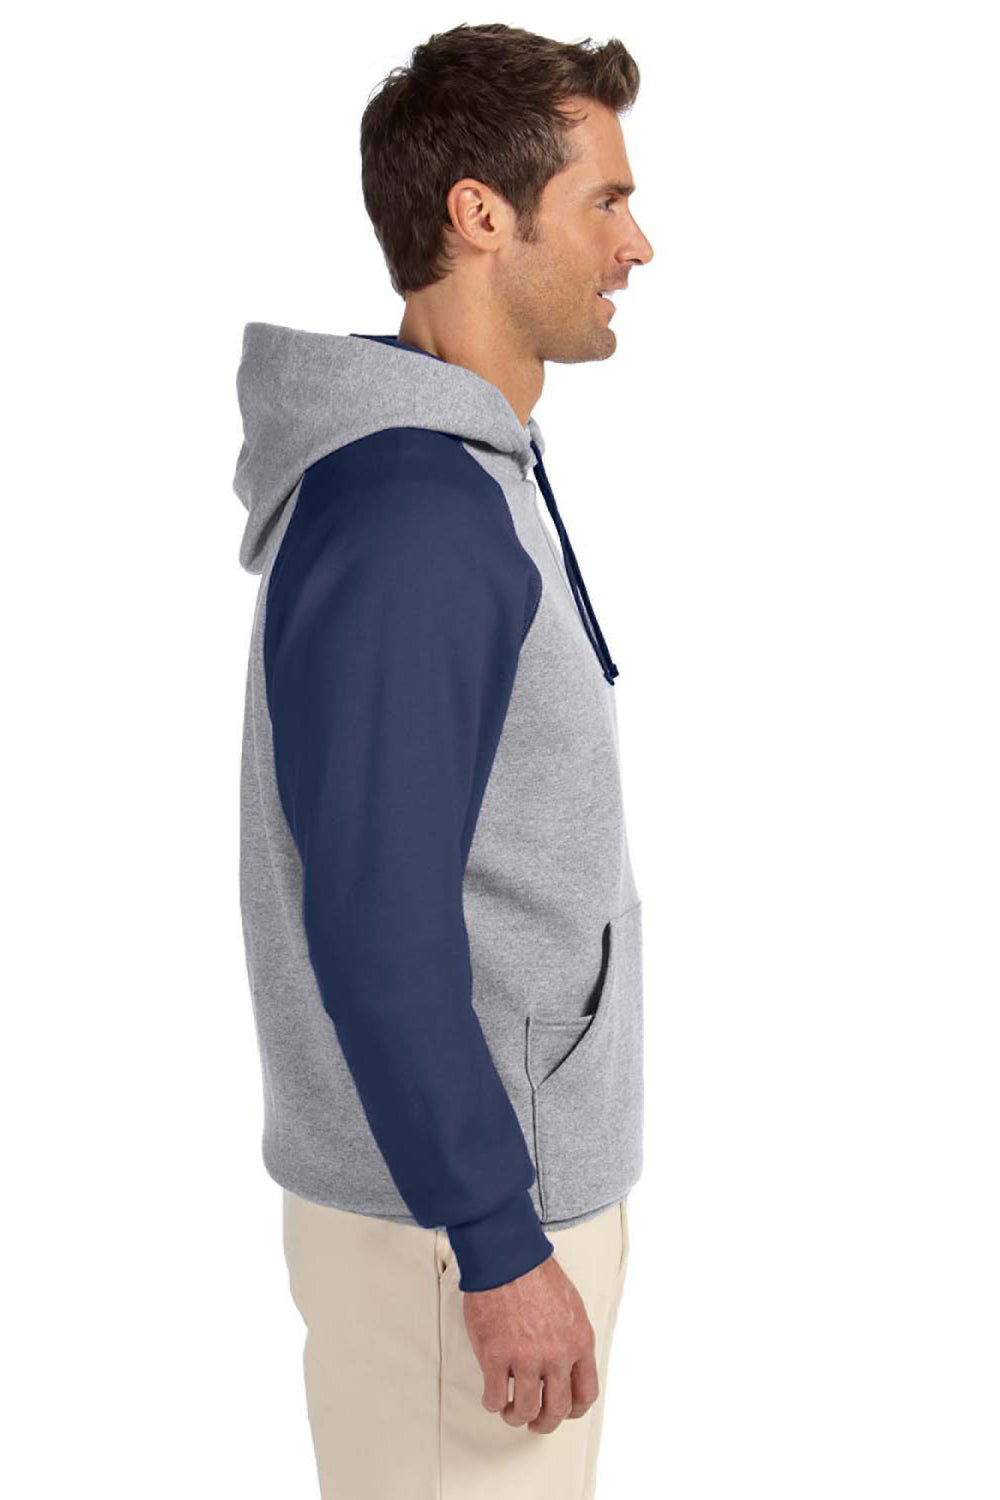 Jerzees 96CR Mens NuBlend Fleece Hooded Sweatshirt Hoodie Oxford Grey/Navy Blue Side